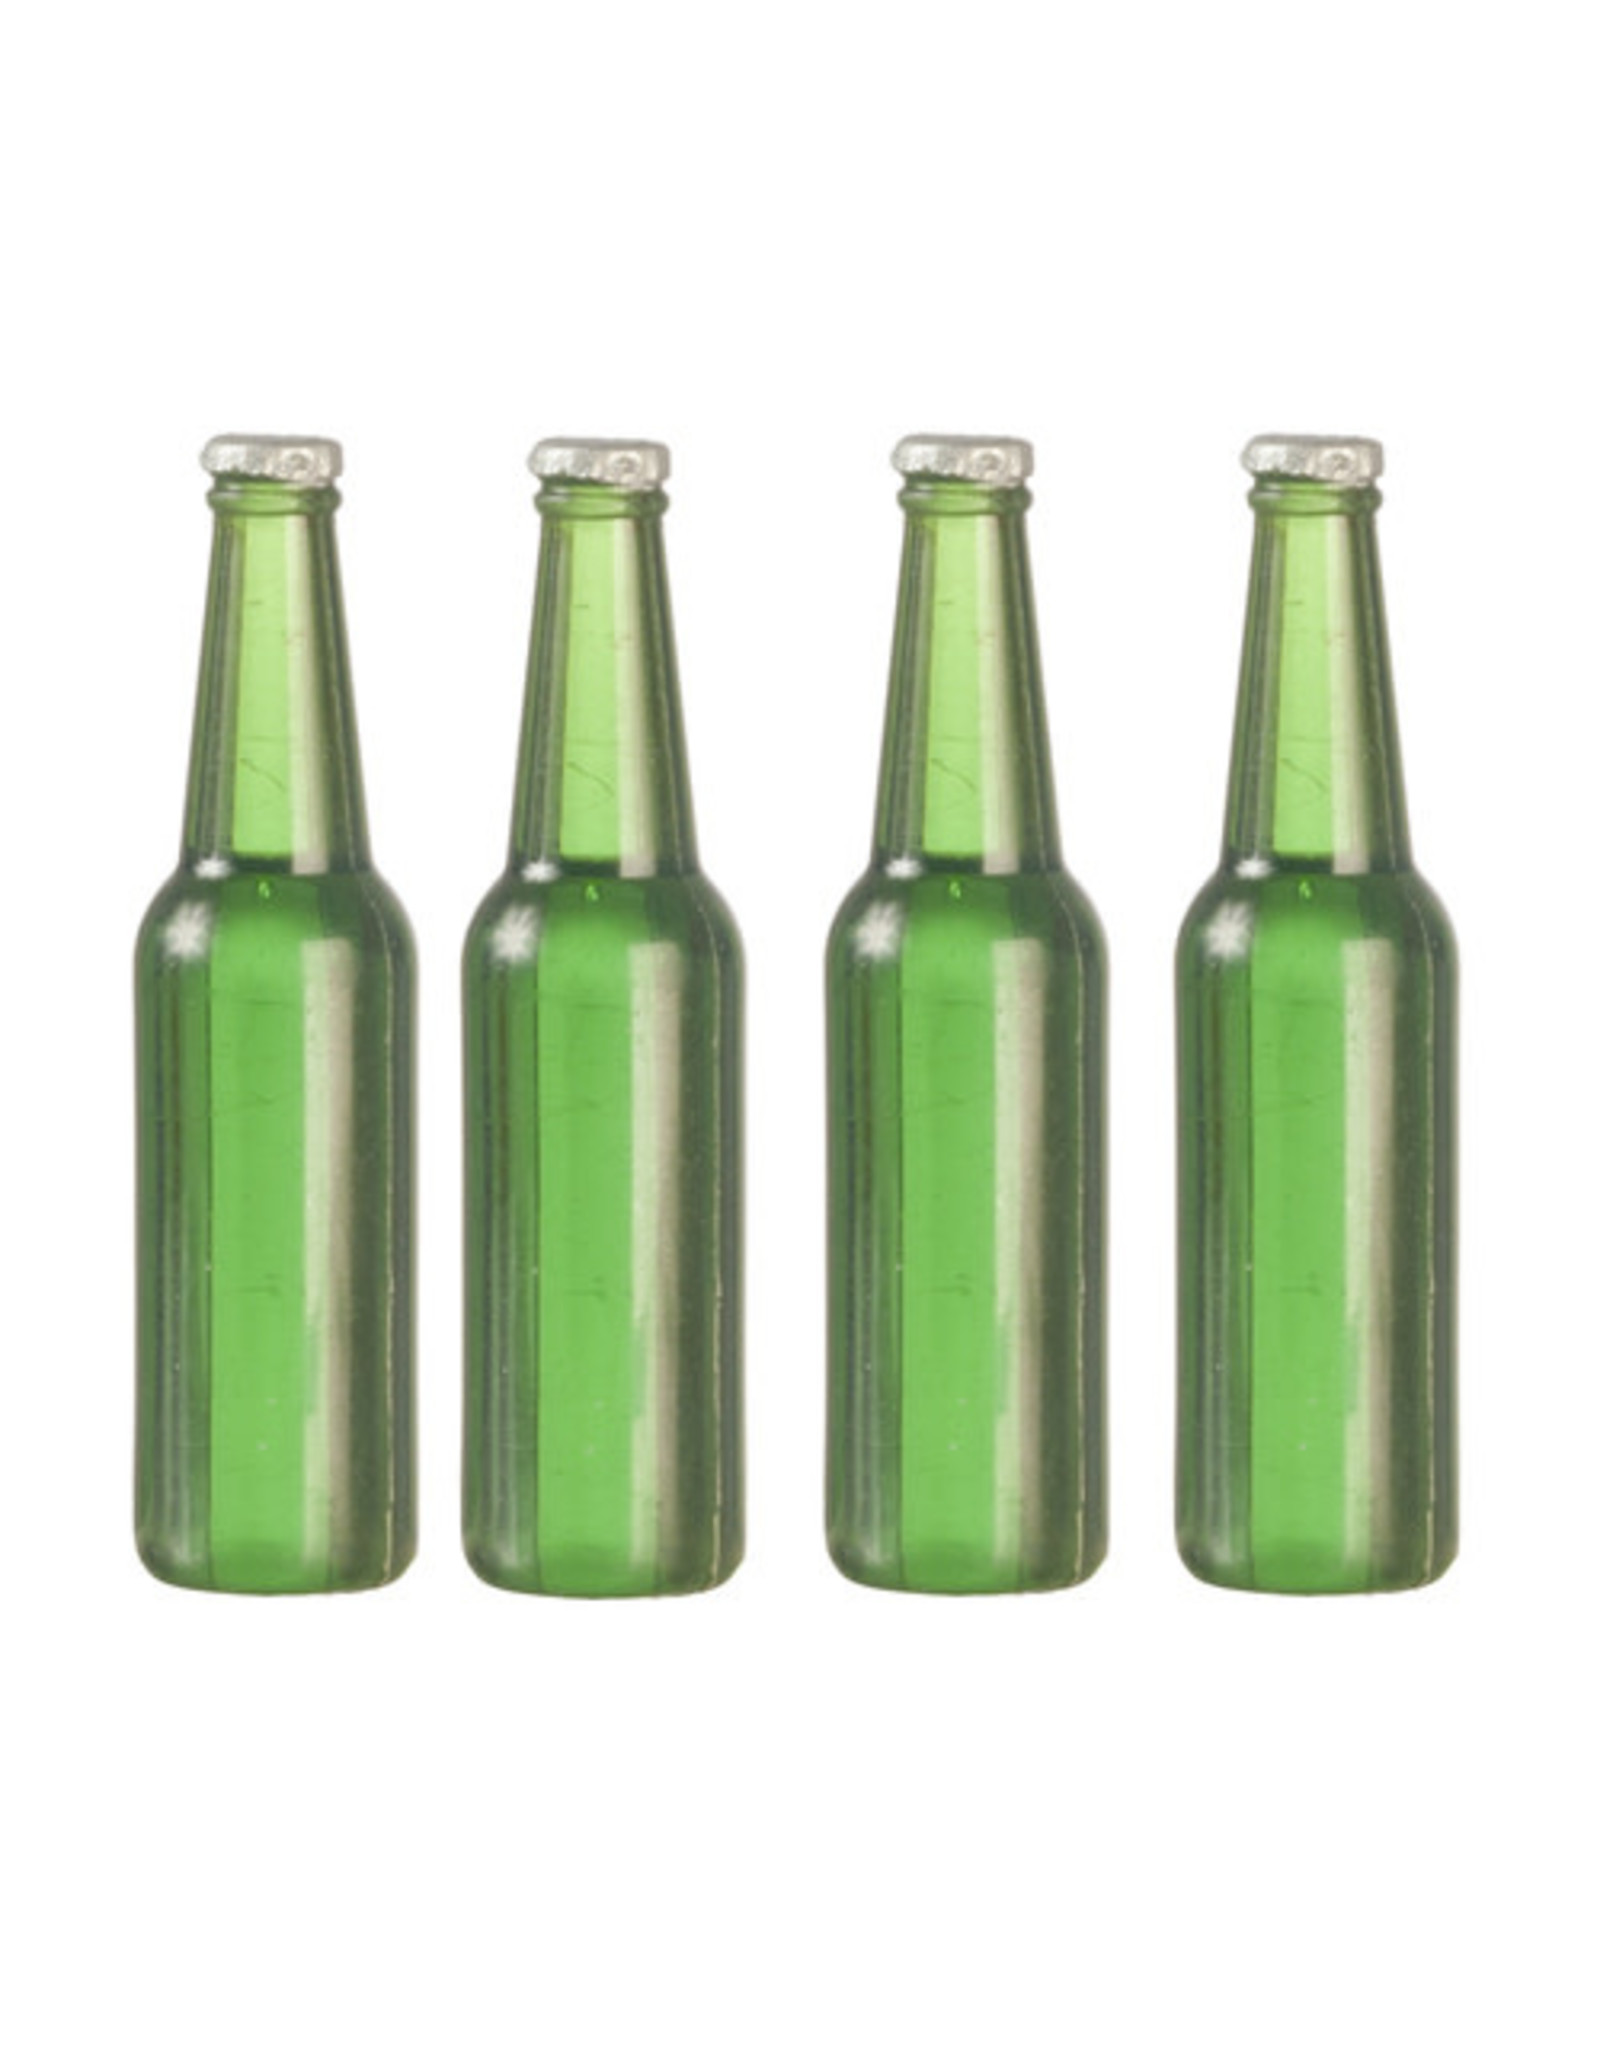 Bouteilles de bière vertes sans étiquette (4) miniatures 1:12